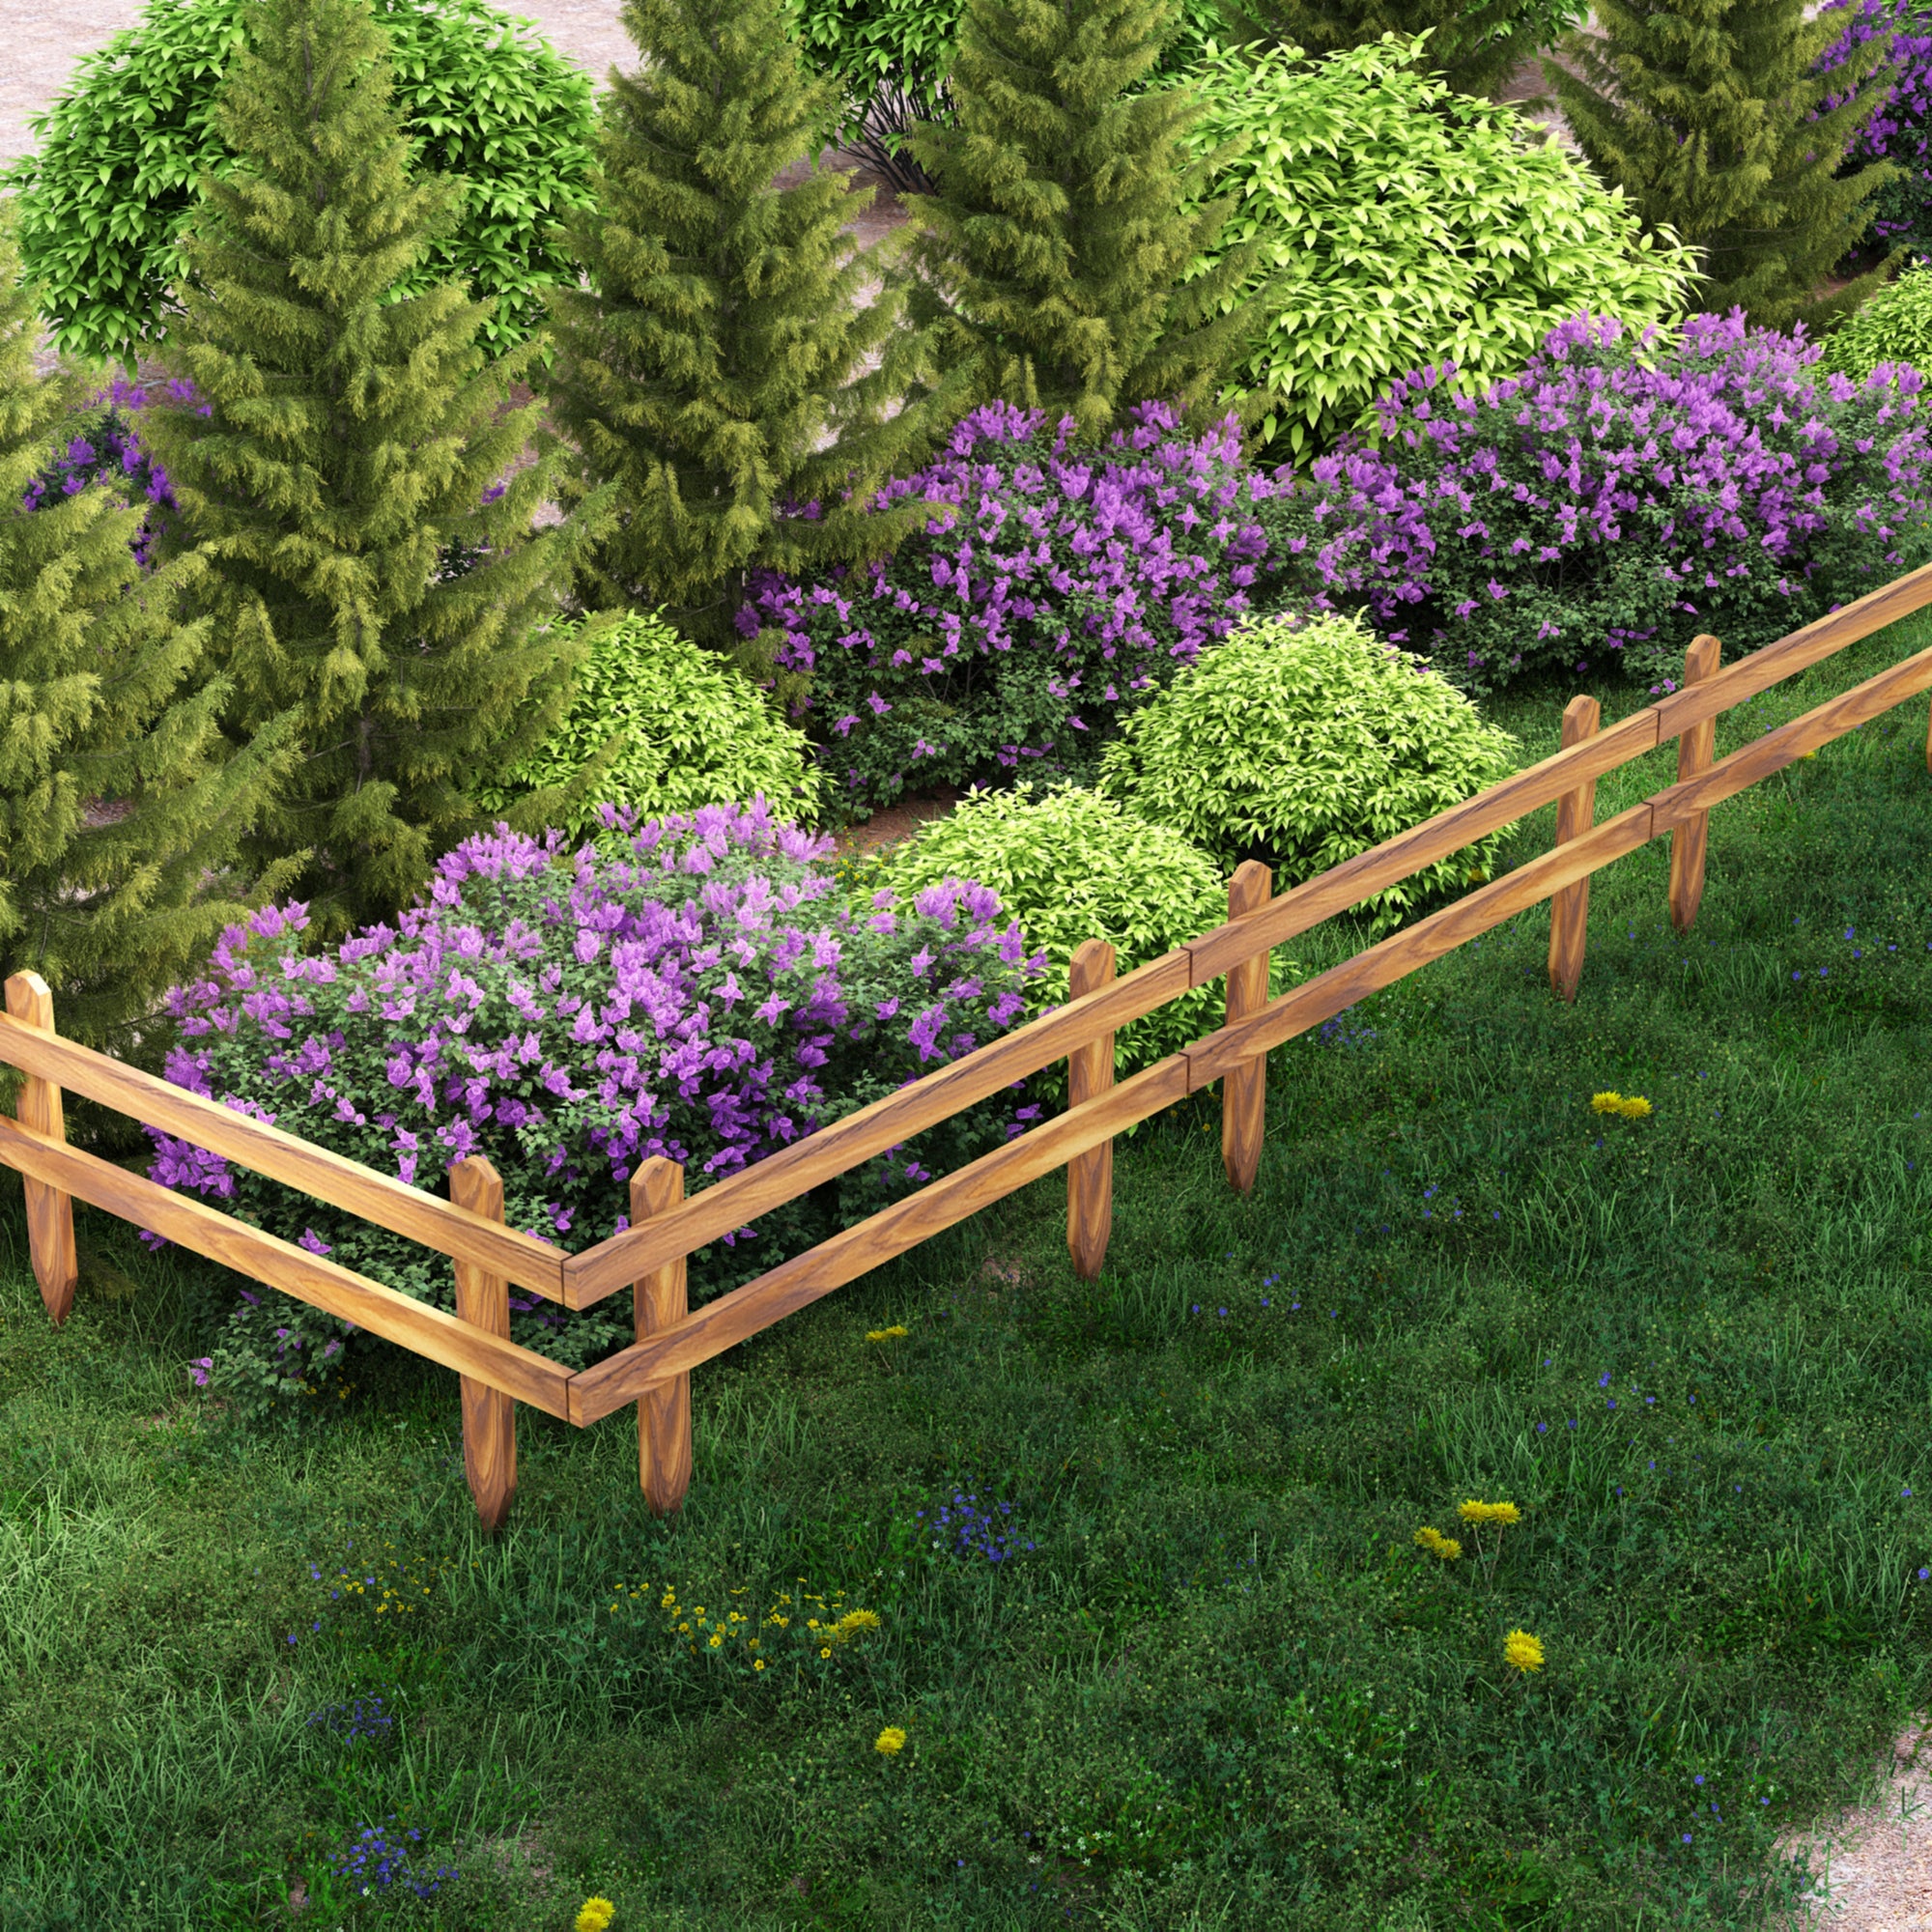 Personaliza tus vallas de madera para tener un jardín original